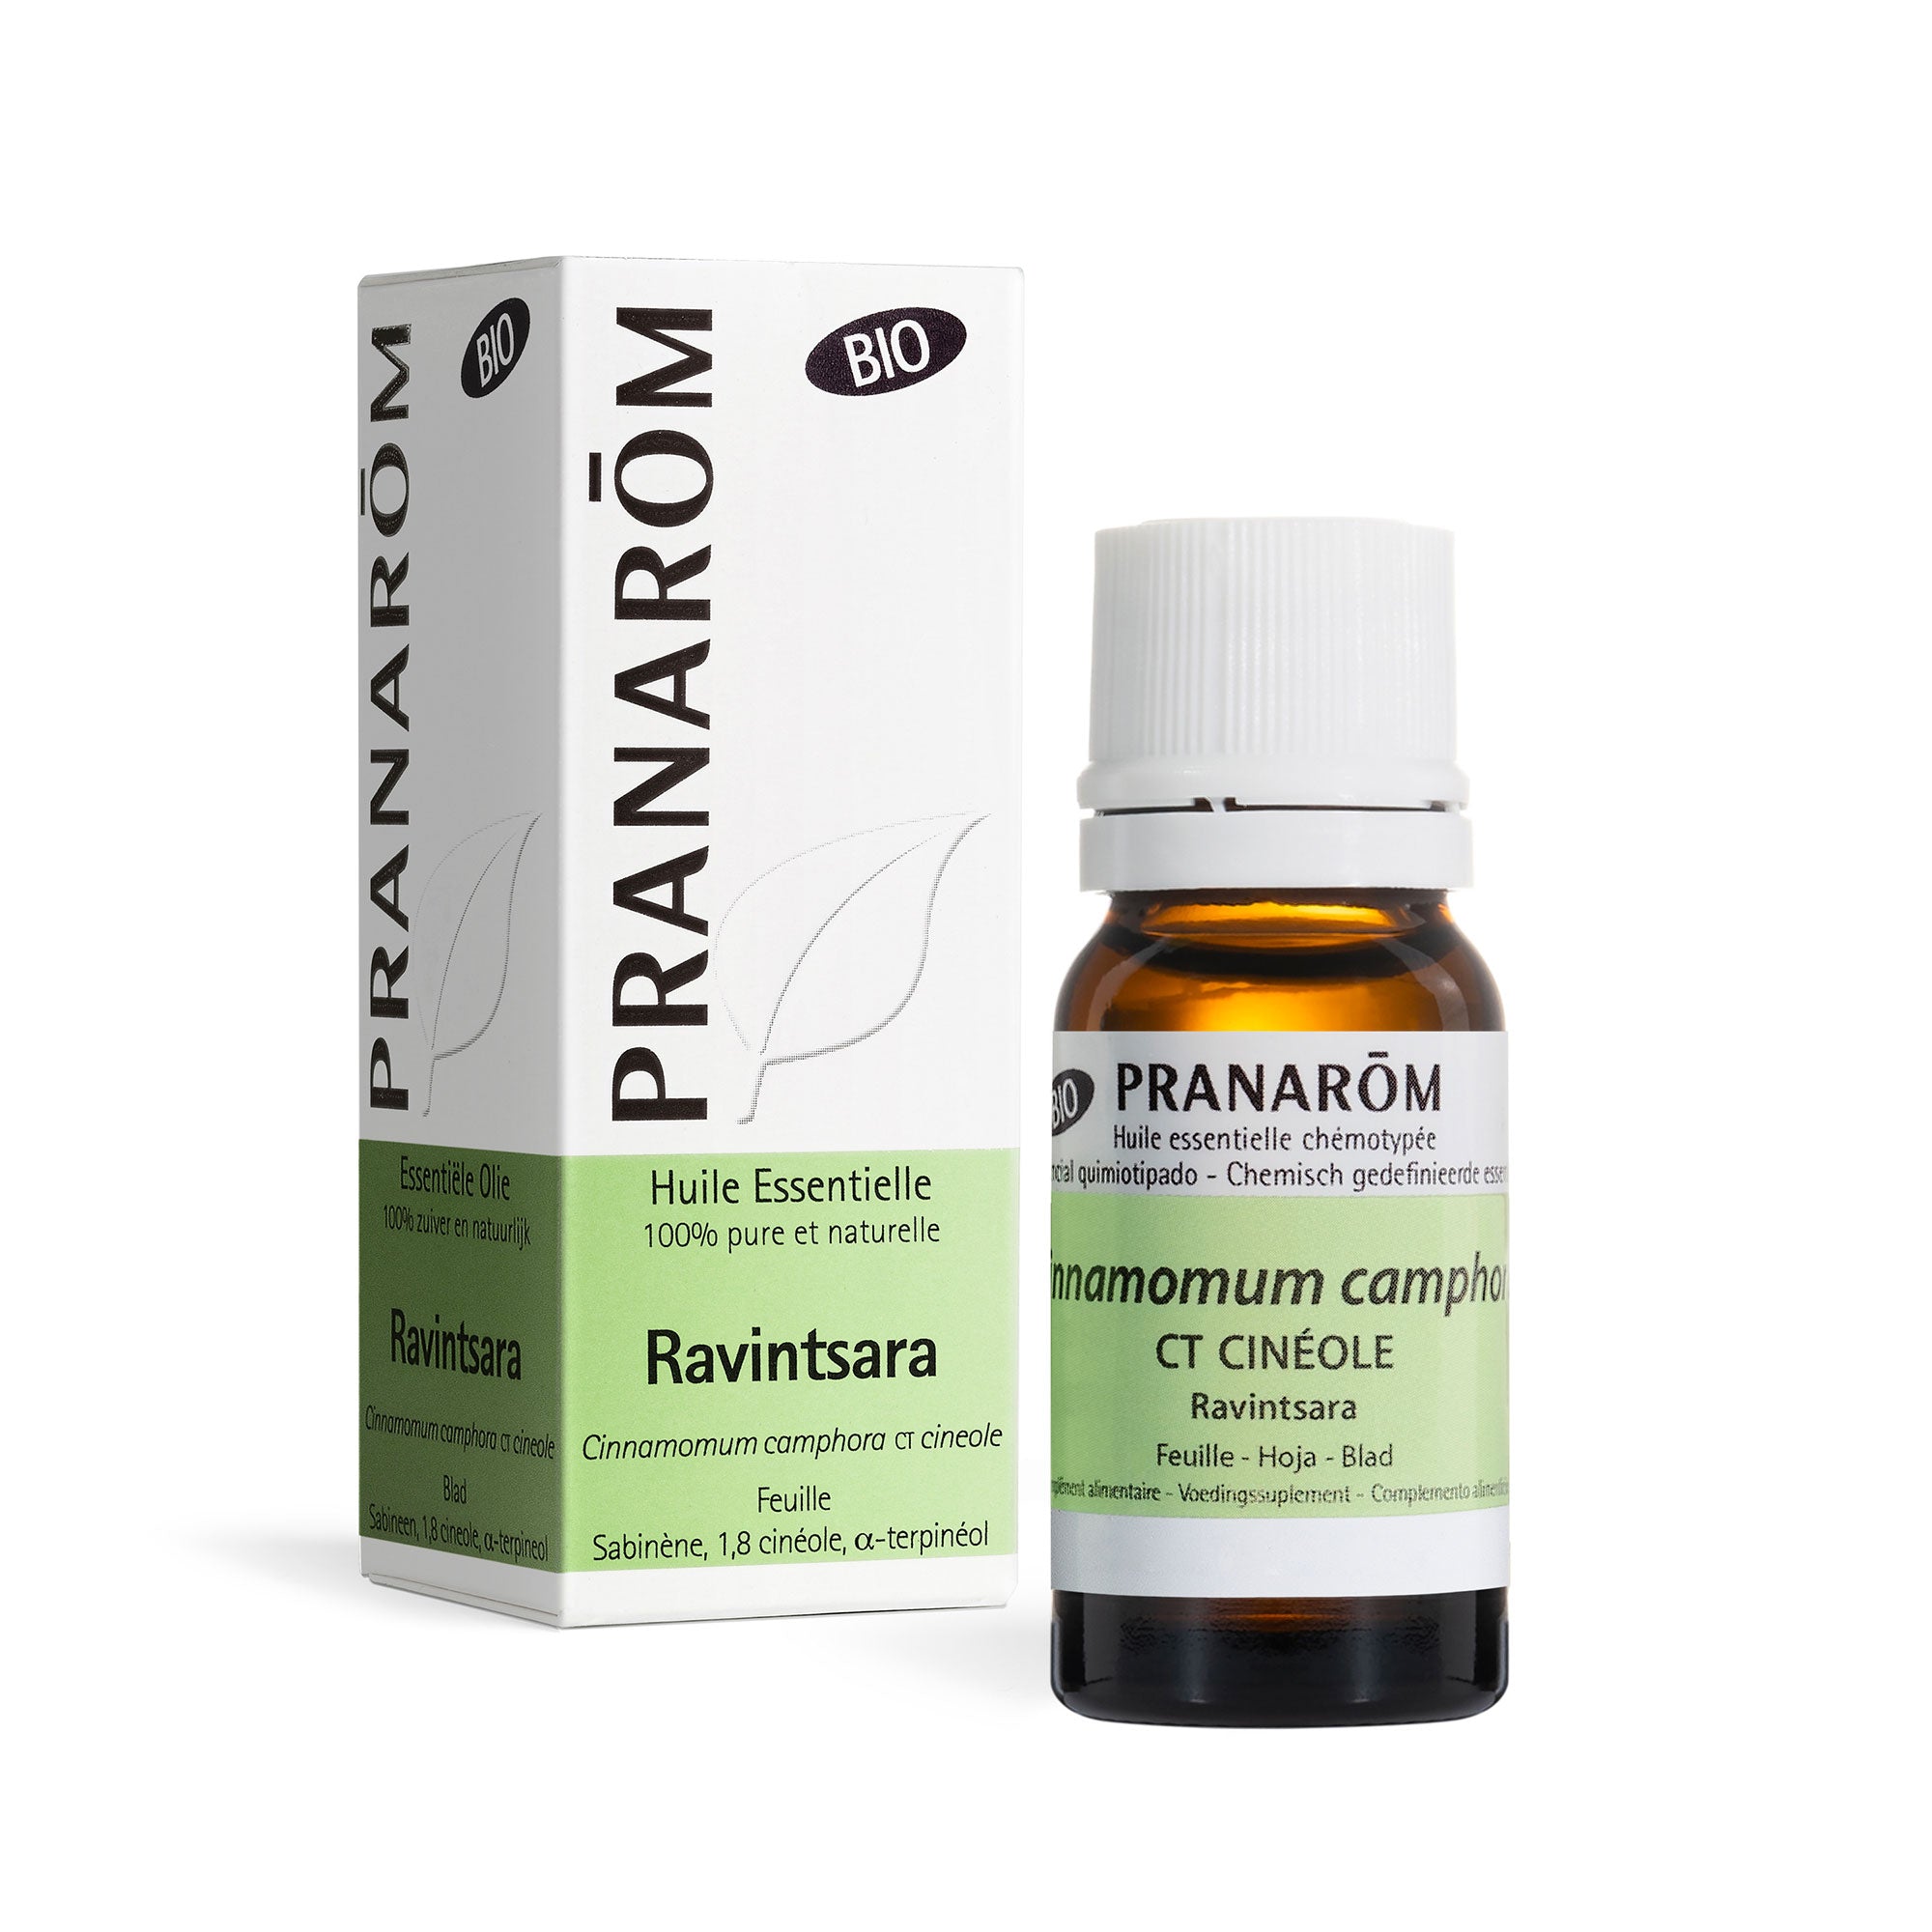 Huile essentielle de Ravintsara : un produit naturel aux vertus incroyables  - Kiné Medical